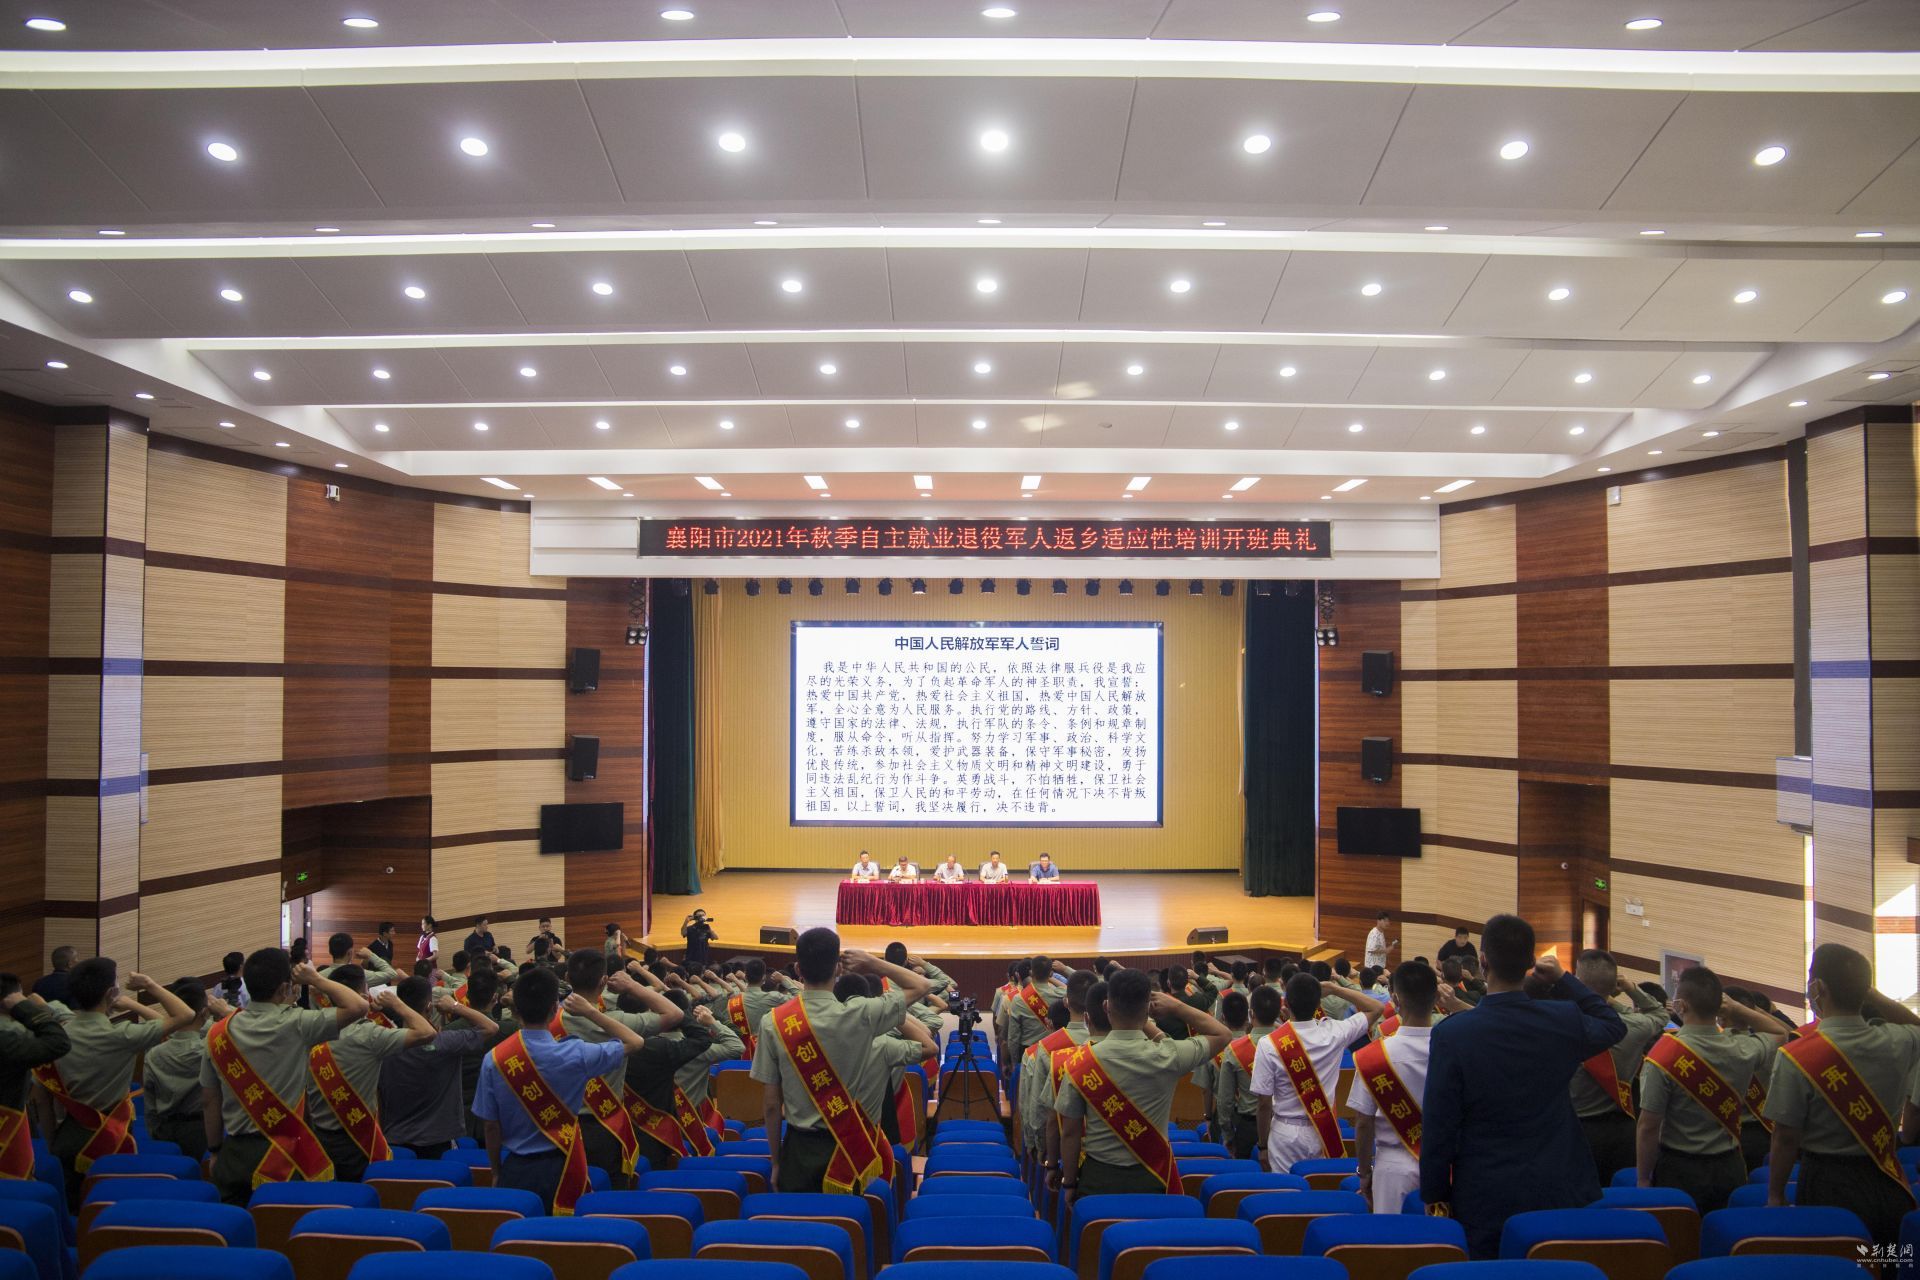 襄阳市举行退役军人返乡欢迎仪式暨适应性培训班